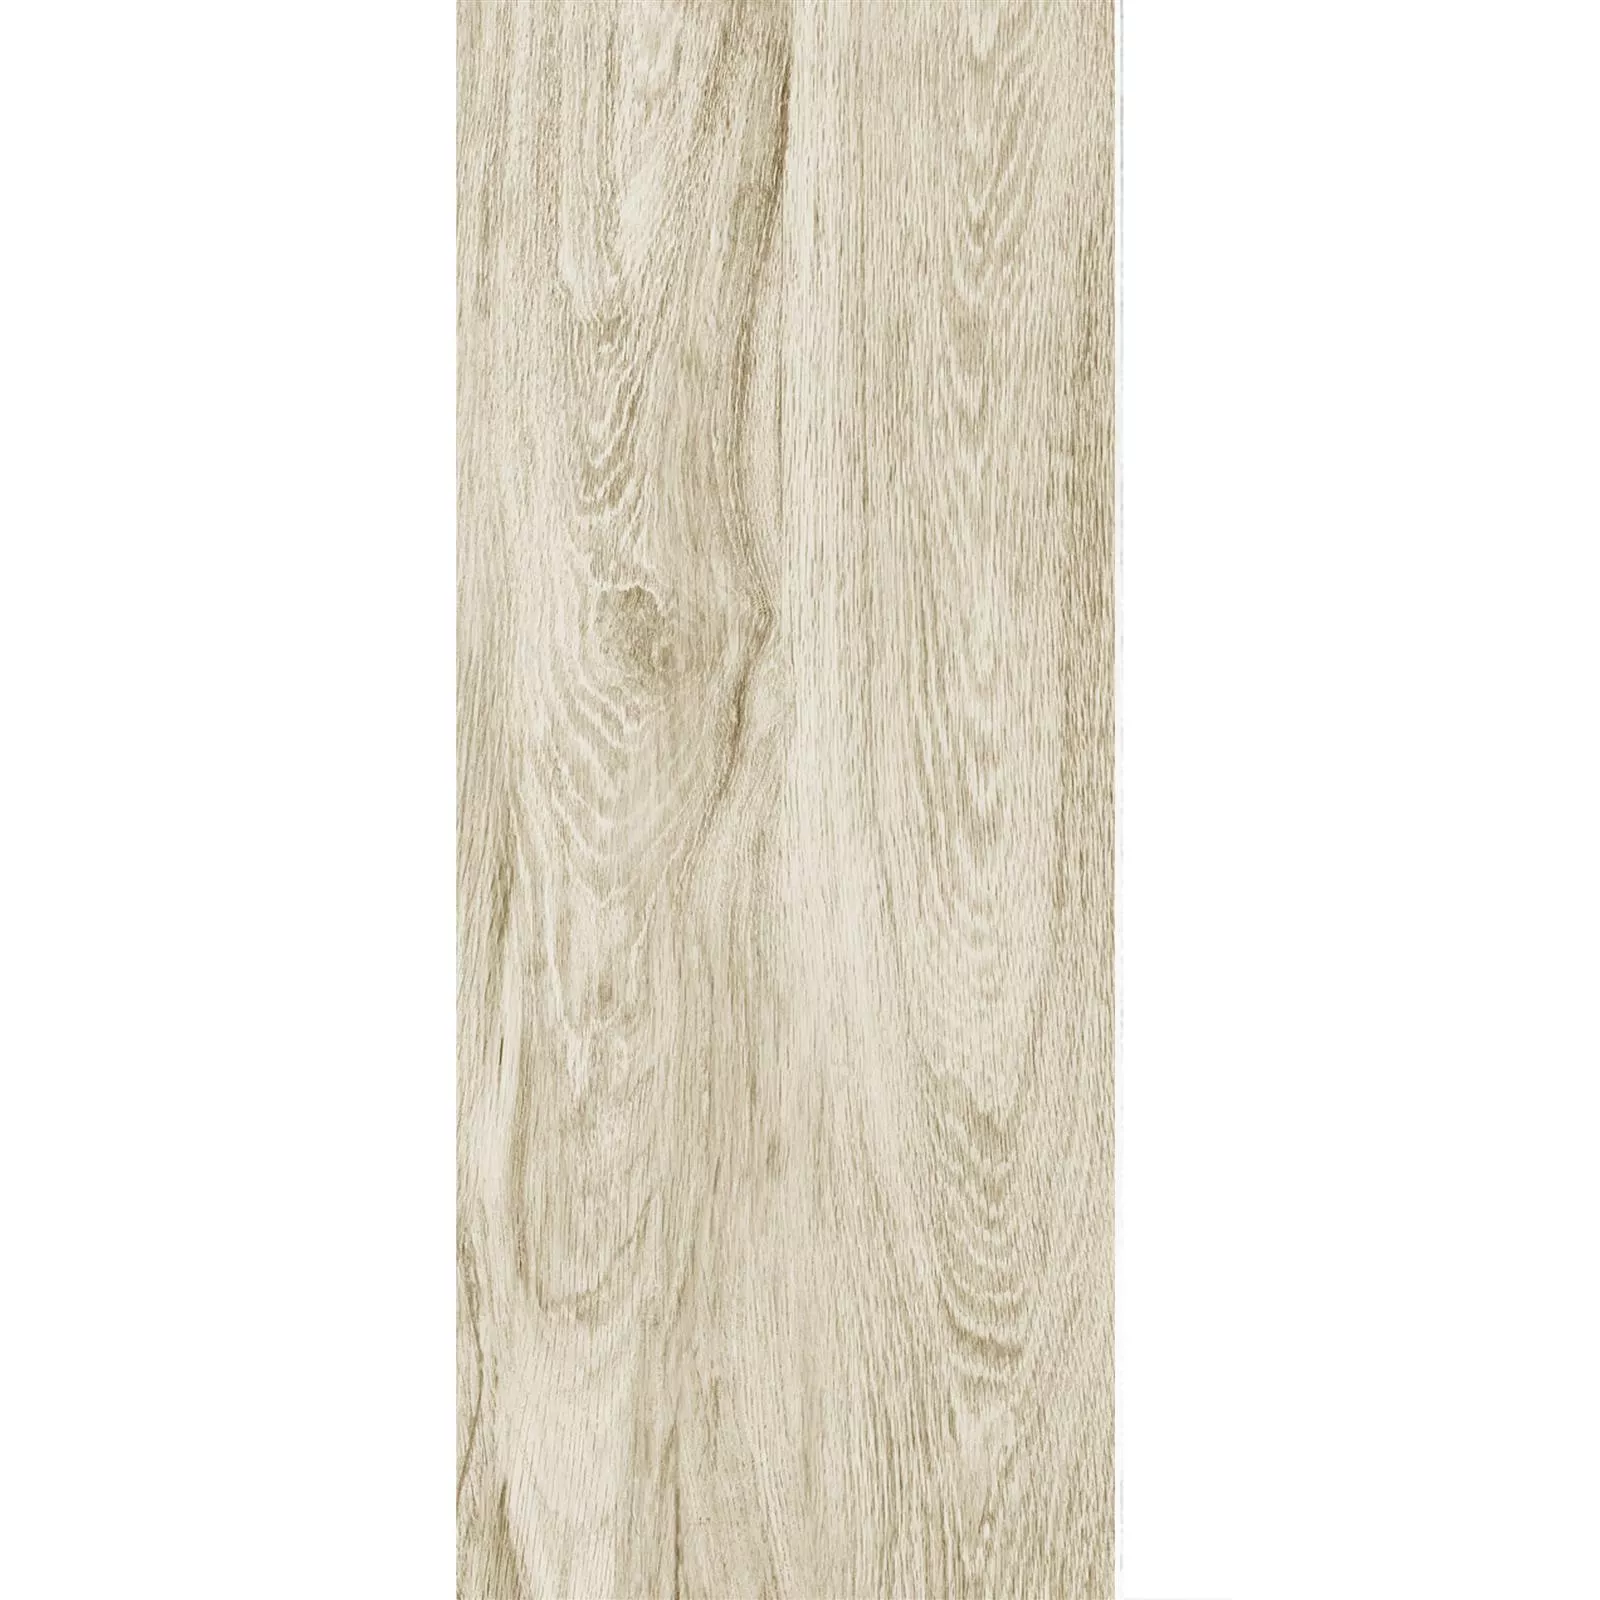 Terrassenplatten Holzoptik Strassburg Beige 30x120cm